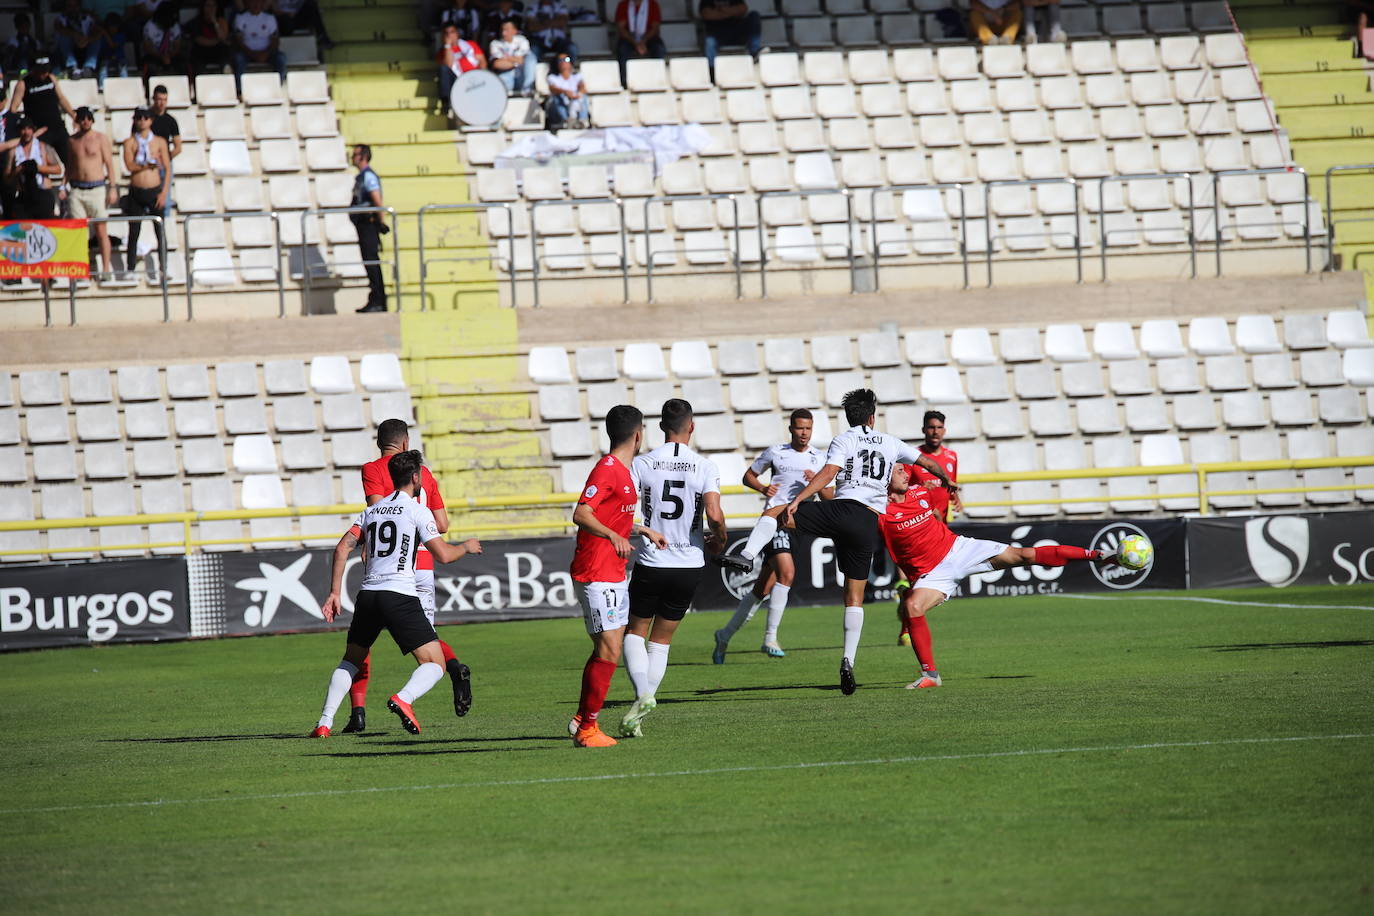 Partido del Burgos CF contra el Salamanca CF. 